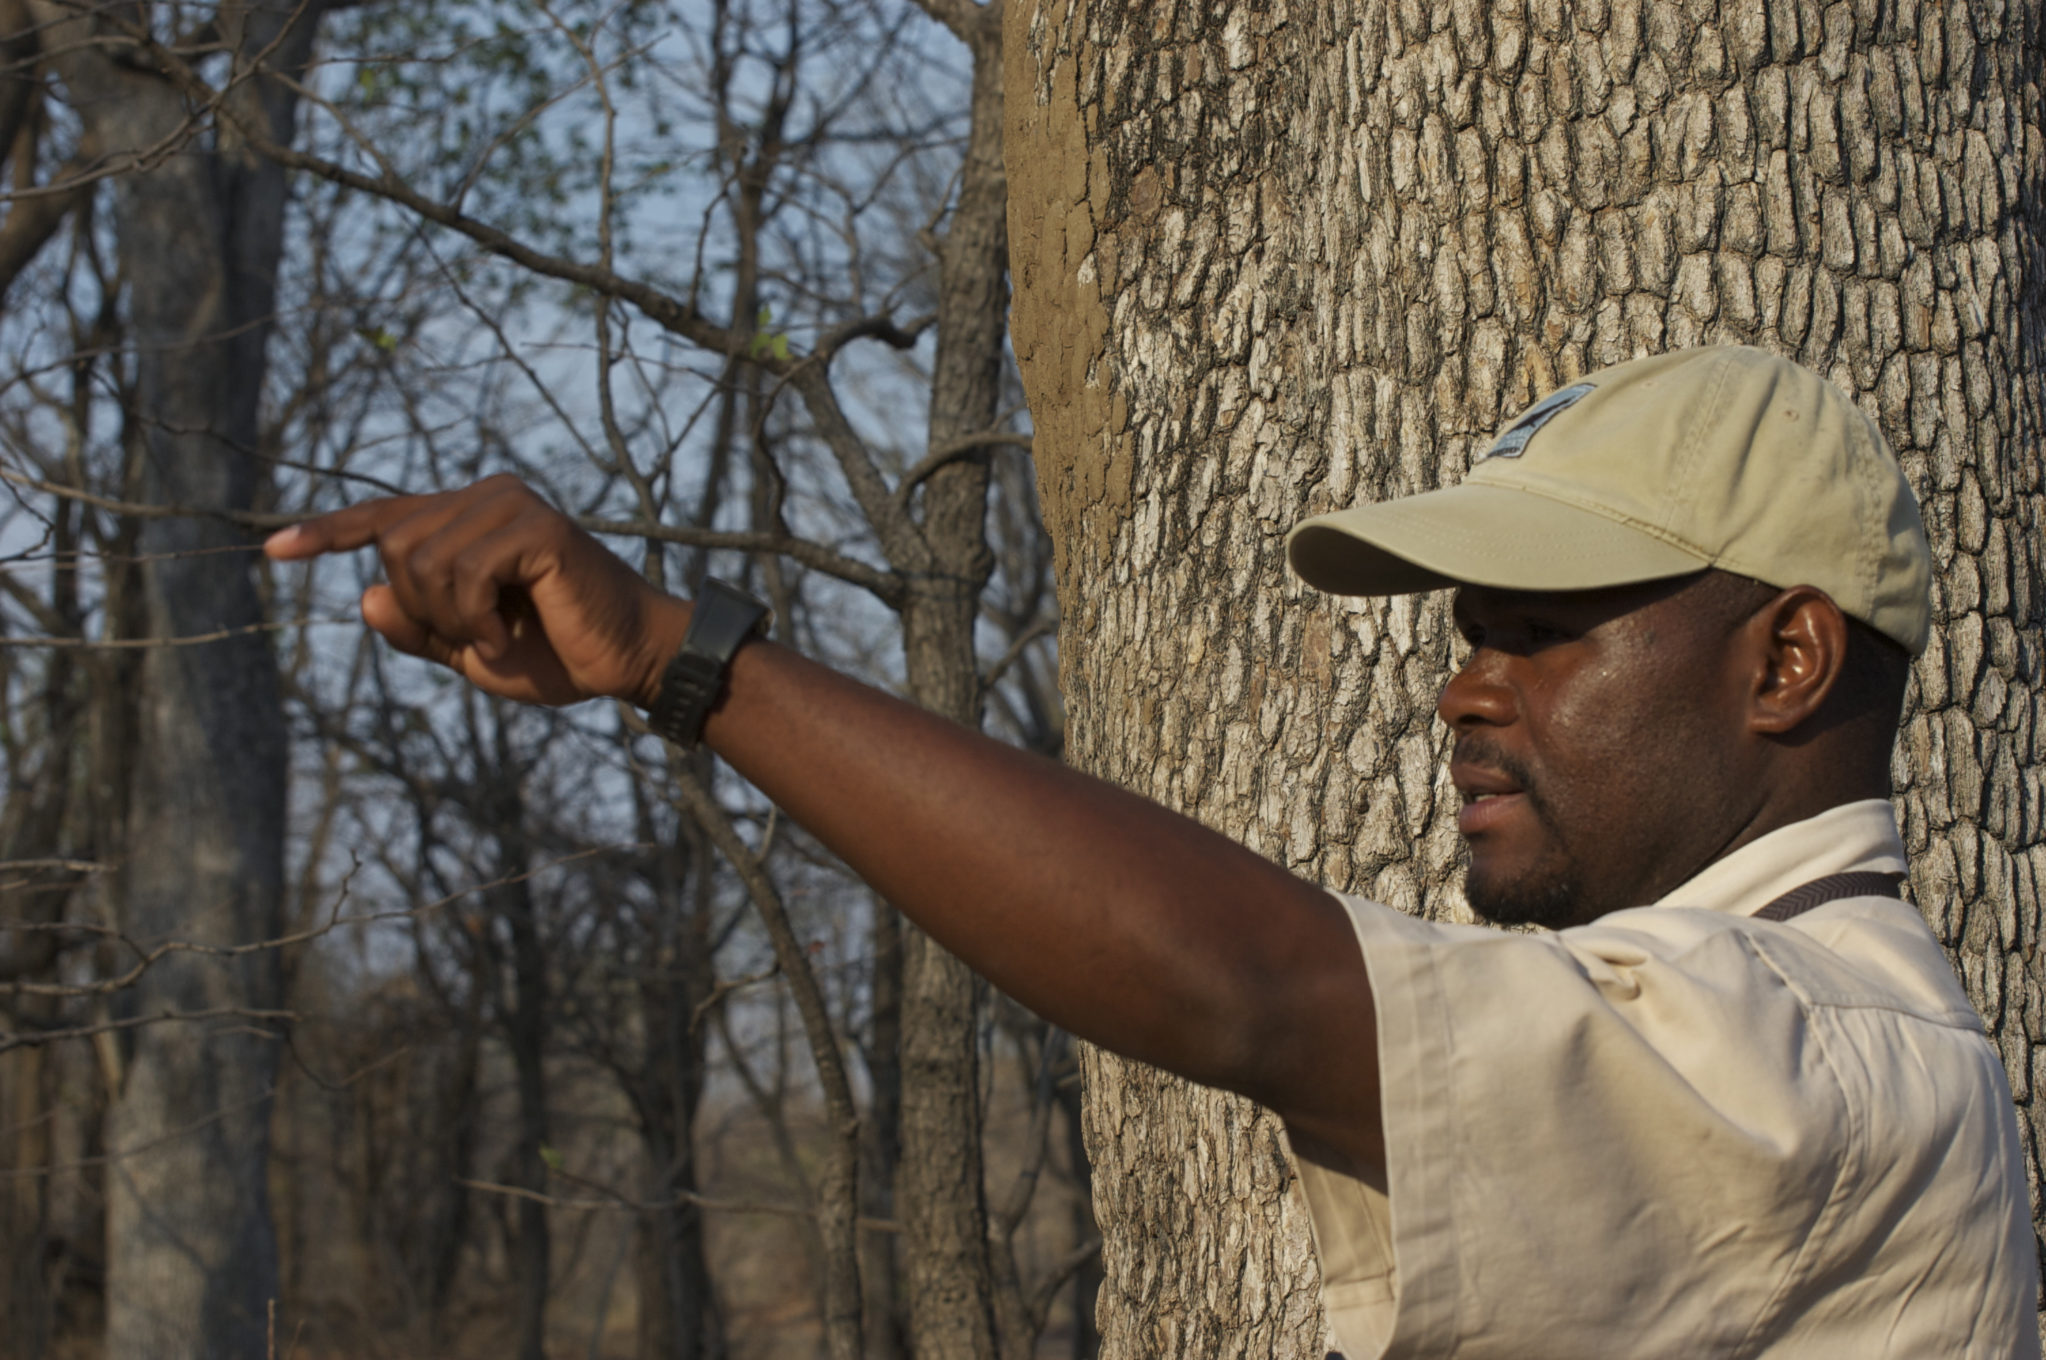 South Luangwa guide, chindeni, zambia safaris, private safaris